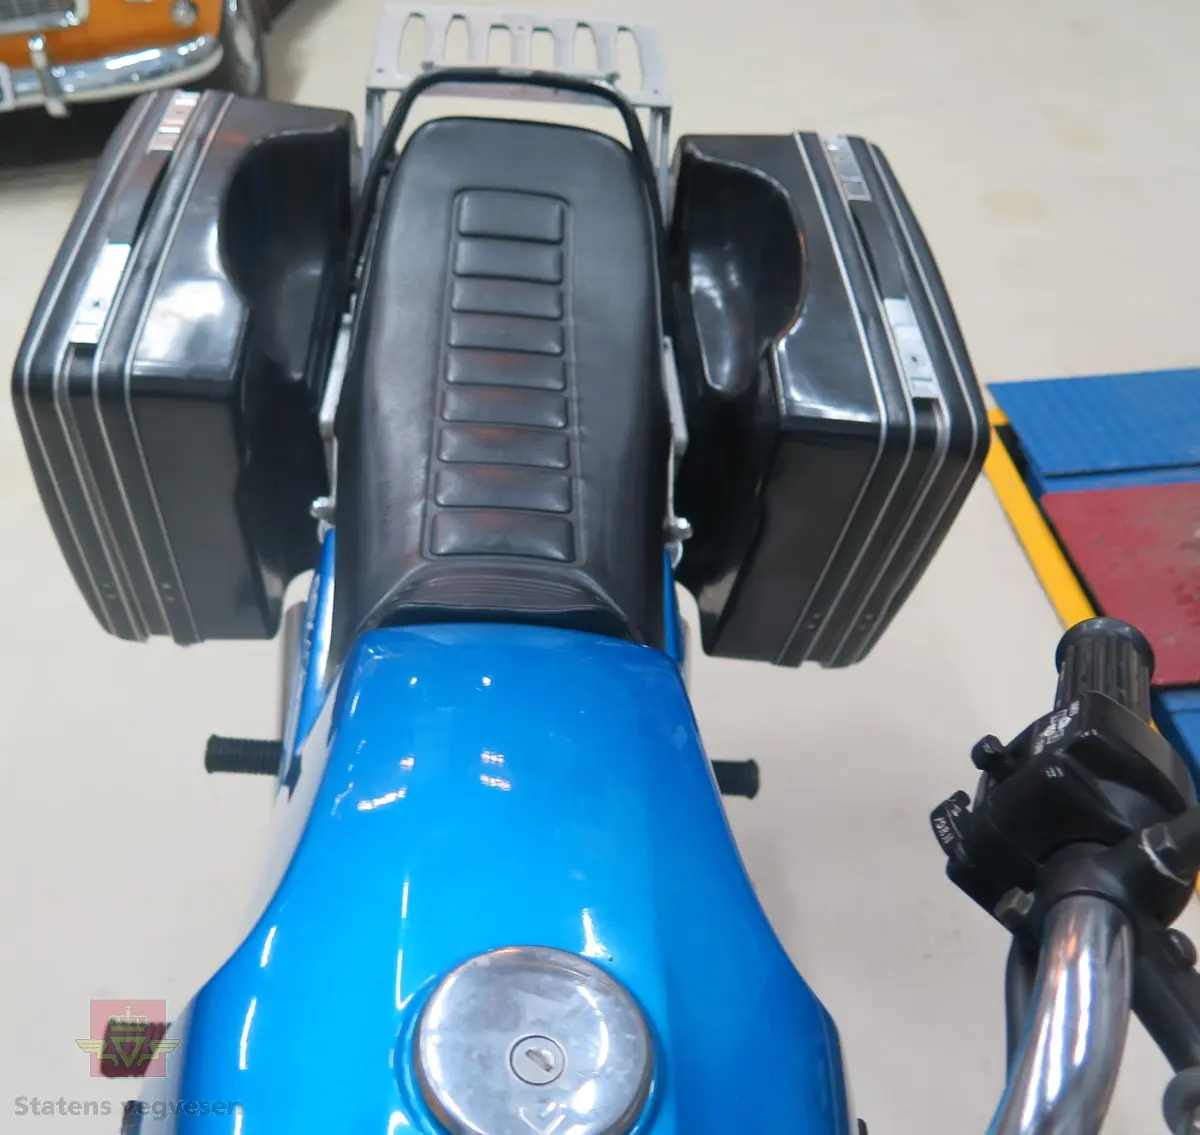 2 hjuls motorsykkel med bakhjulstrekk (kjededrift). Motorsykkel har en bensindrevet 4-takts 2-sylindret DOHC 8 ventil motor. Den har et sylindervolum på 399 kubikkcentimeter og en effekt på 42 Hk. Motorsykkelen har 2 sitteplasser.